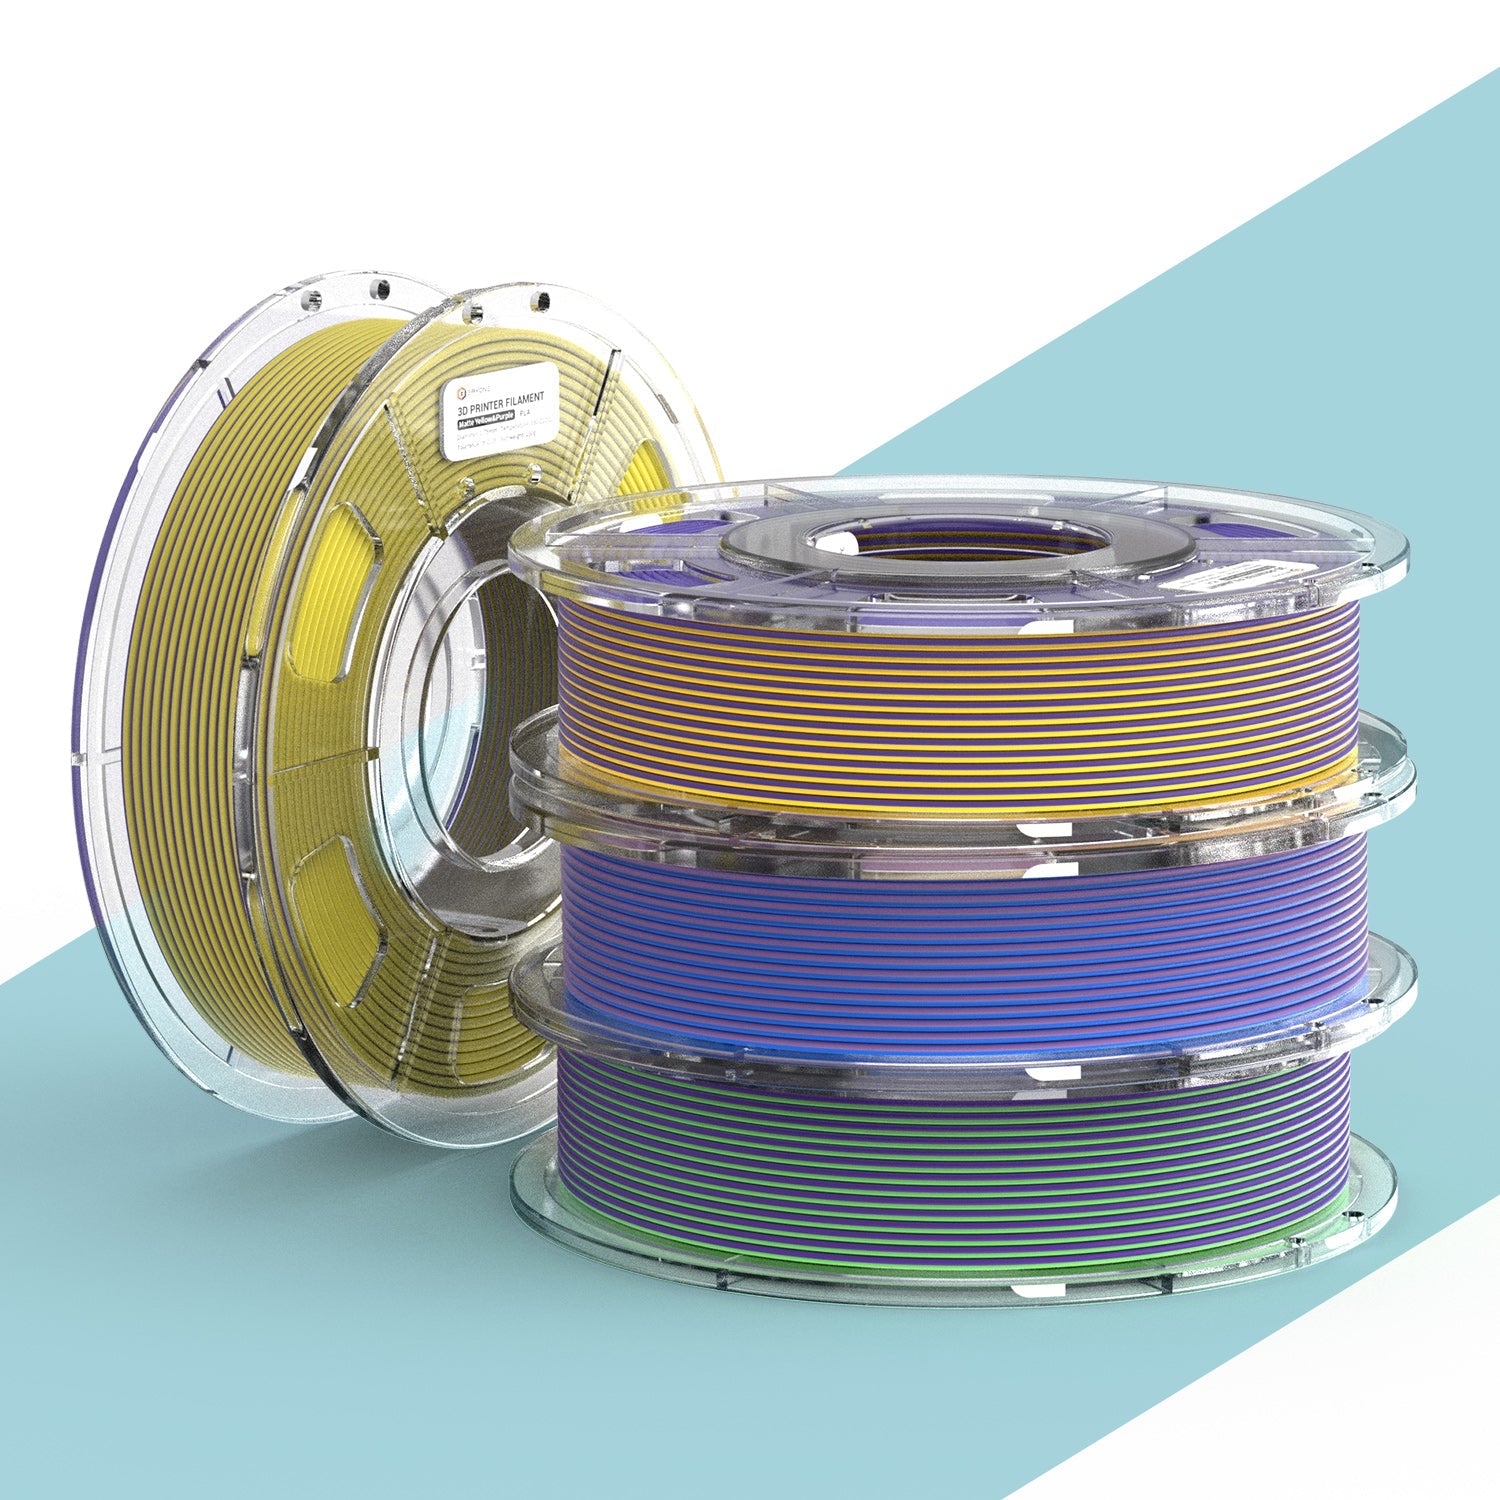 ERYONE 4 ROLLEN/250 g (insgesamt 1 kg/2,2 lbs) 1,75 mm mattes zweifarbiges PLA-Filament, Genauigkeit +/- 0,03 mm (Gelb & Lila; Blau & Gelb; Bule & Lila; Grün & Lila)